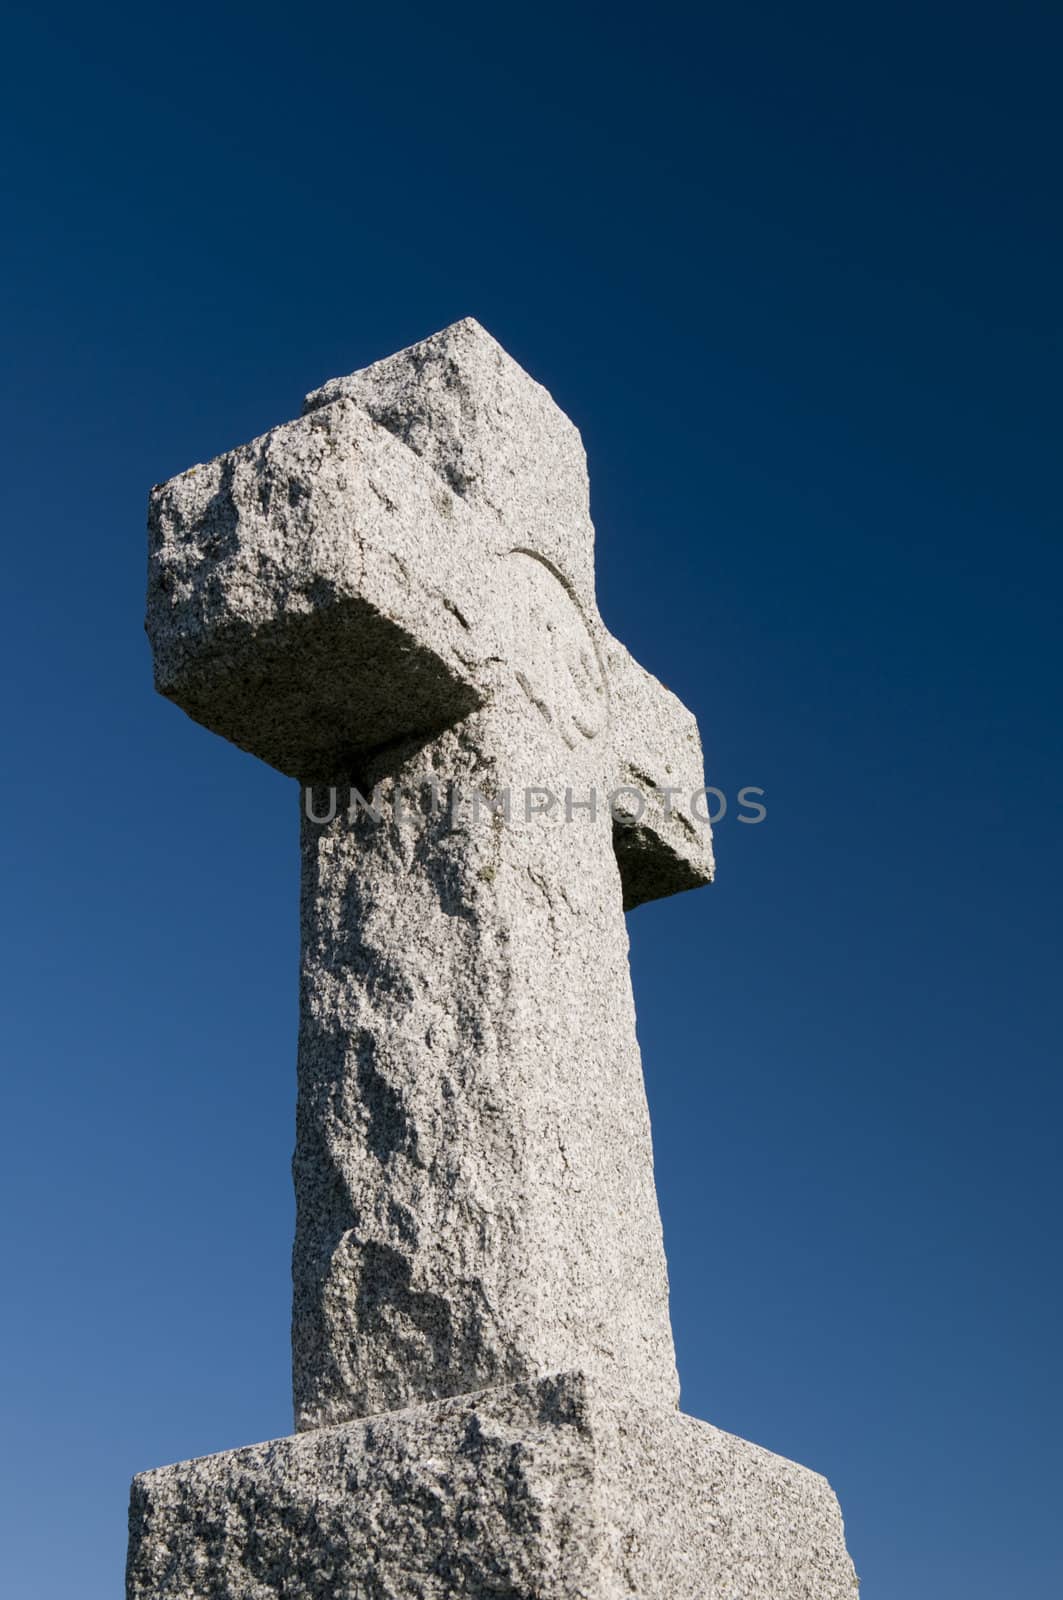 Wide angle image of a stone cross on a deep blue sky